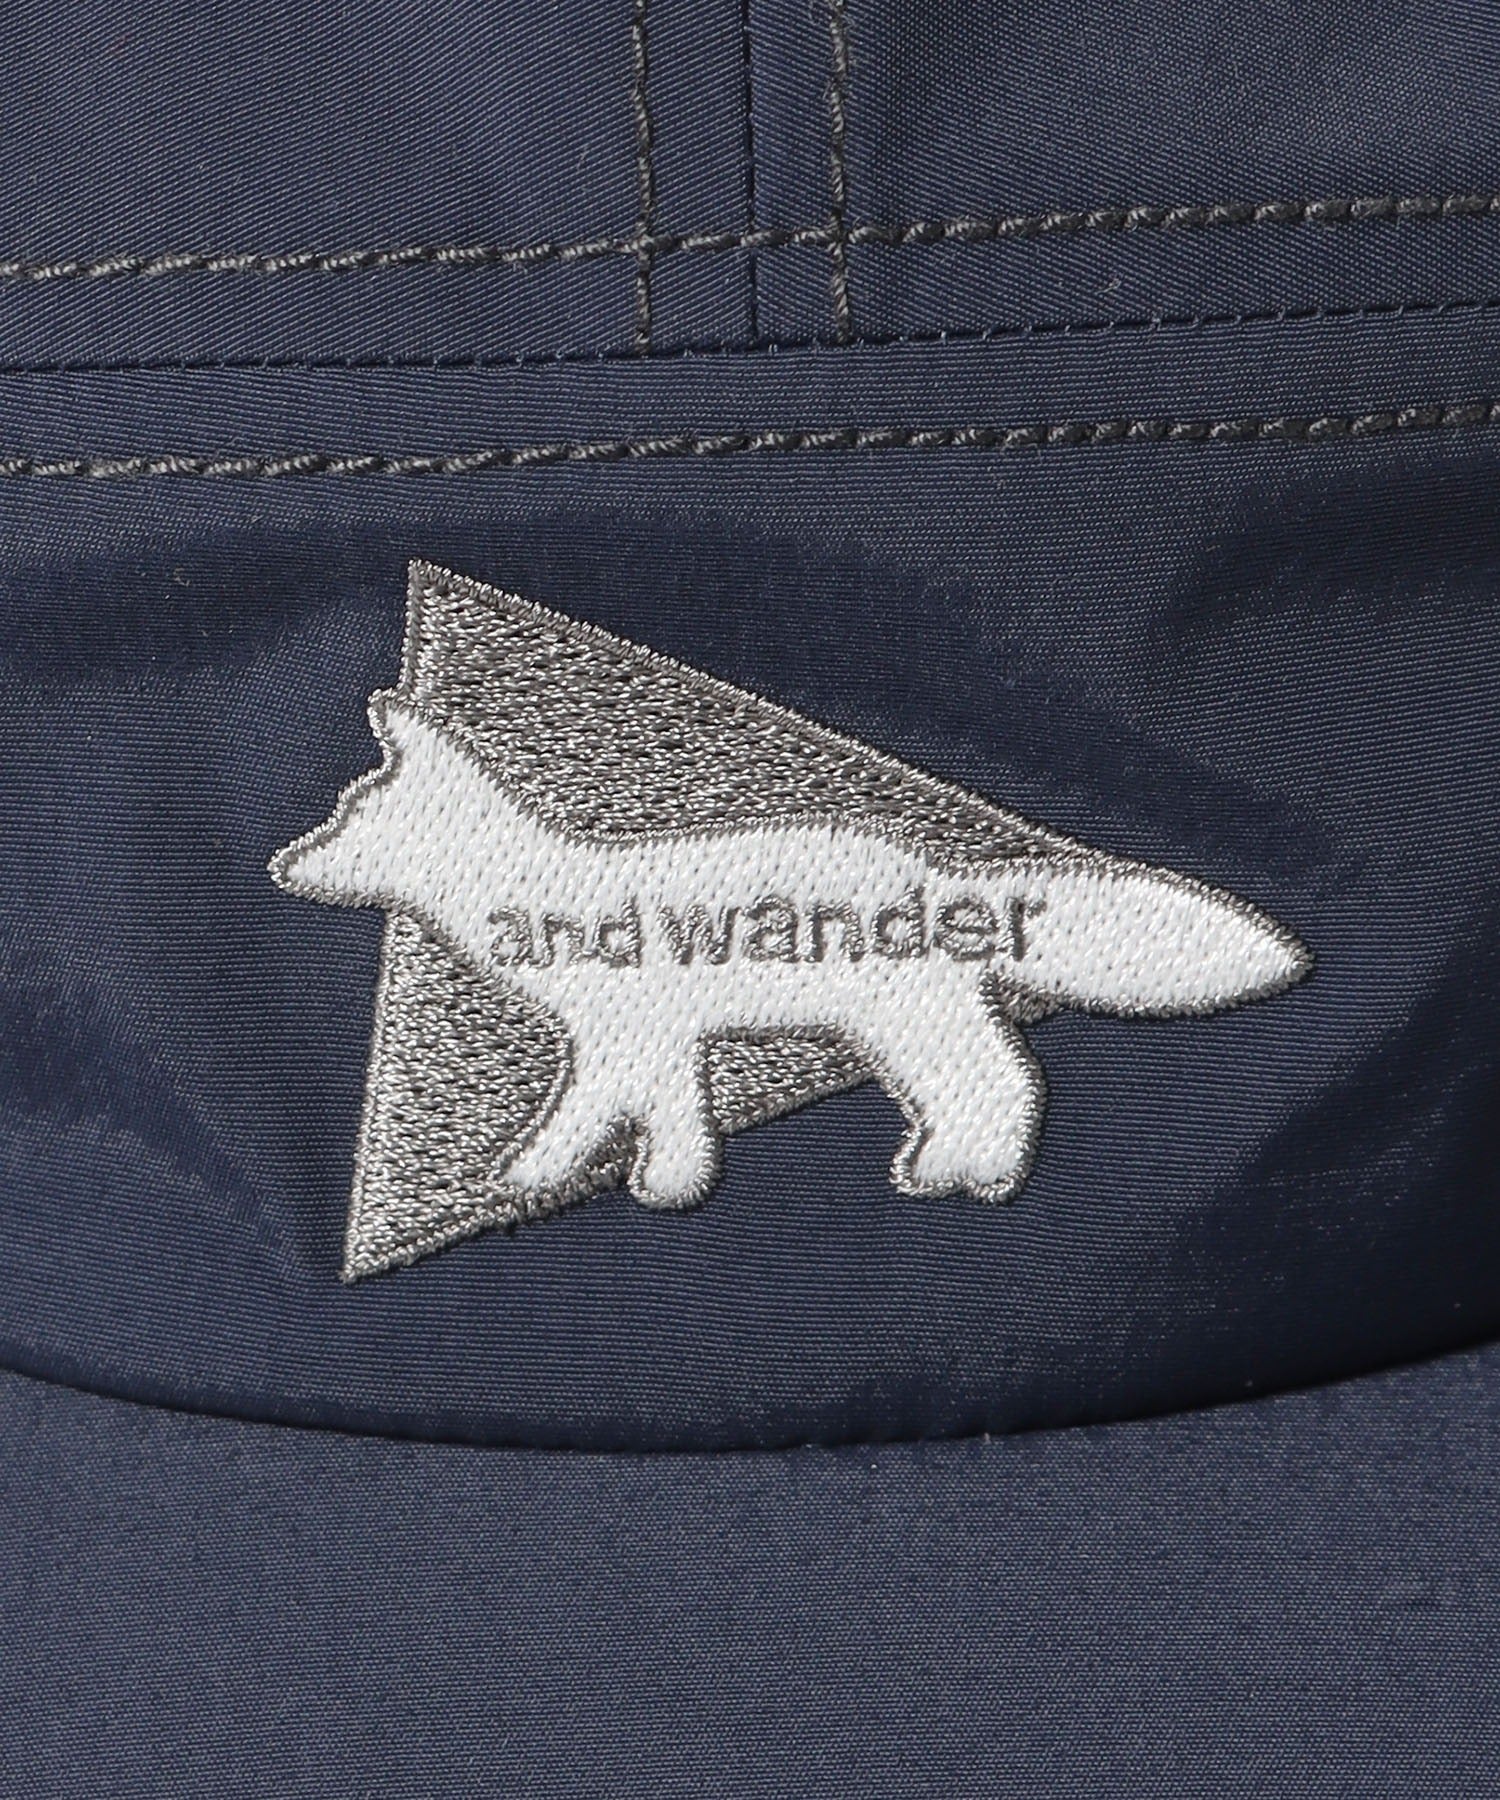 and wander/アンドワンダー×Maison Kitsune/メゾン キツネ NYLON CAP